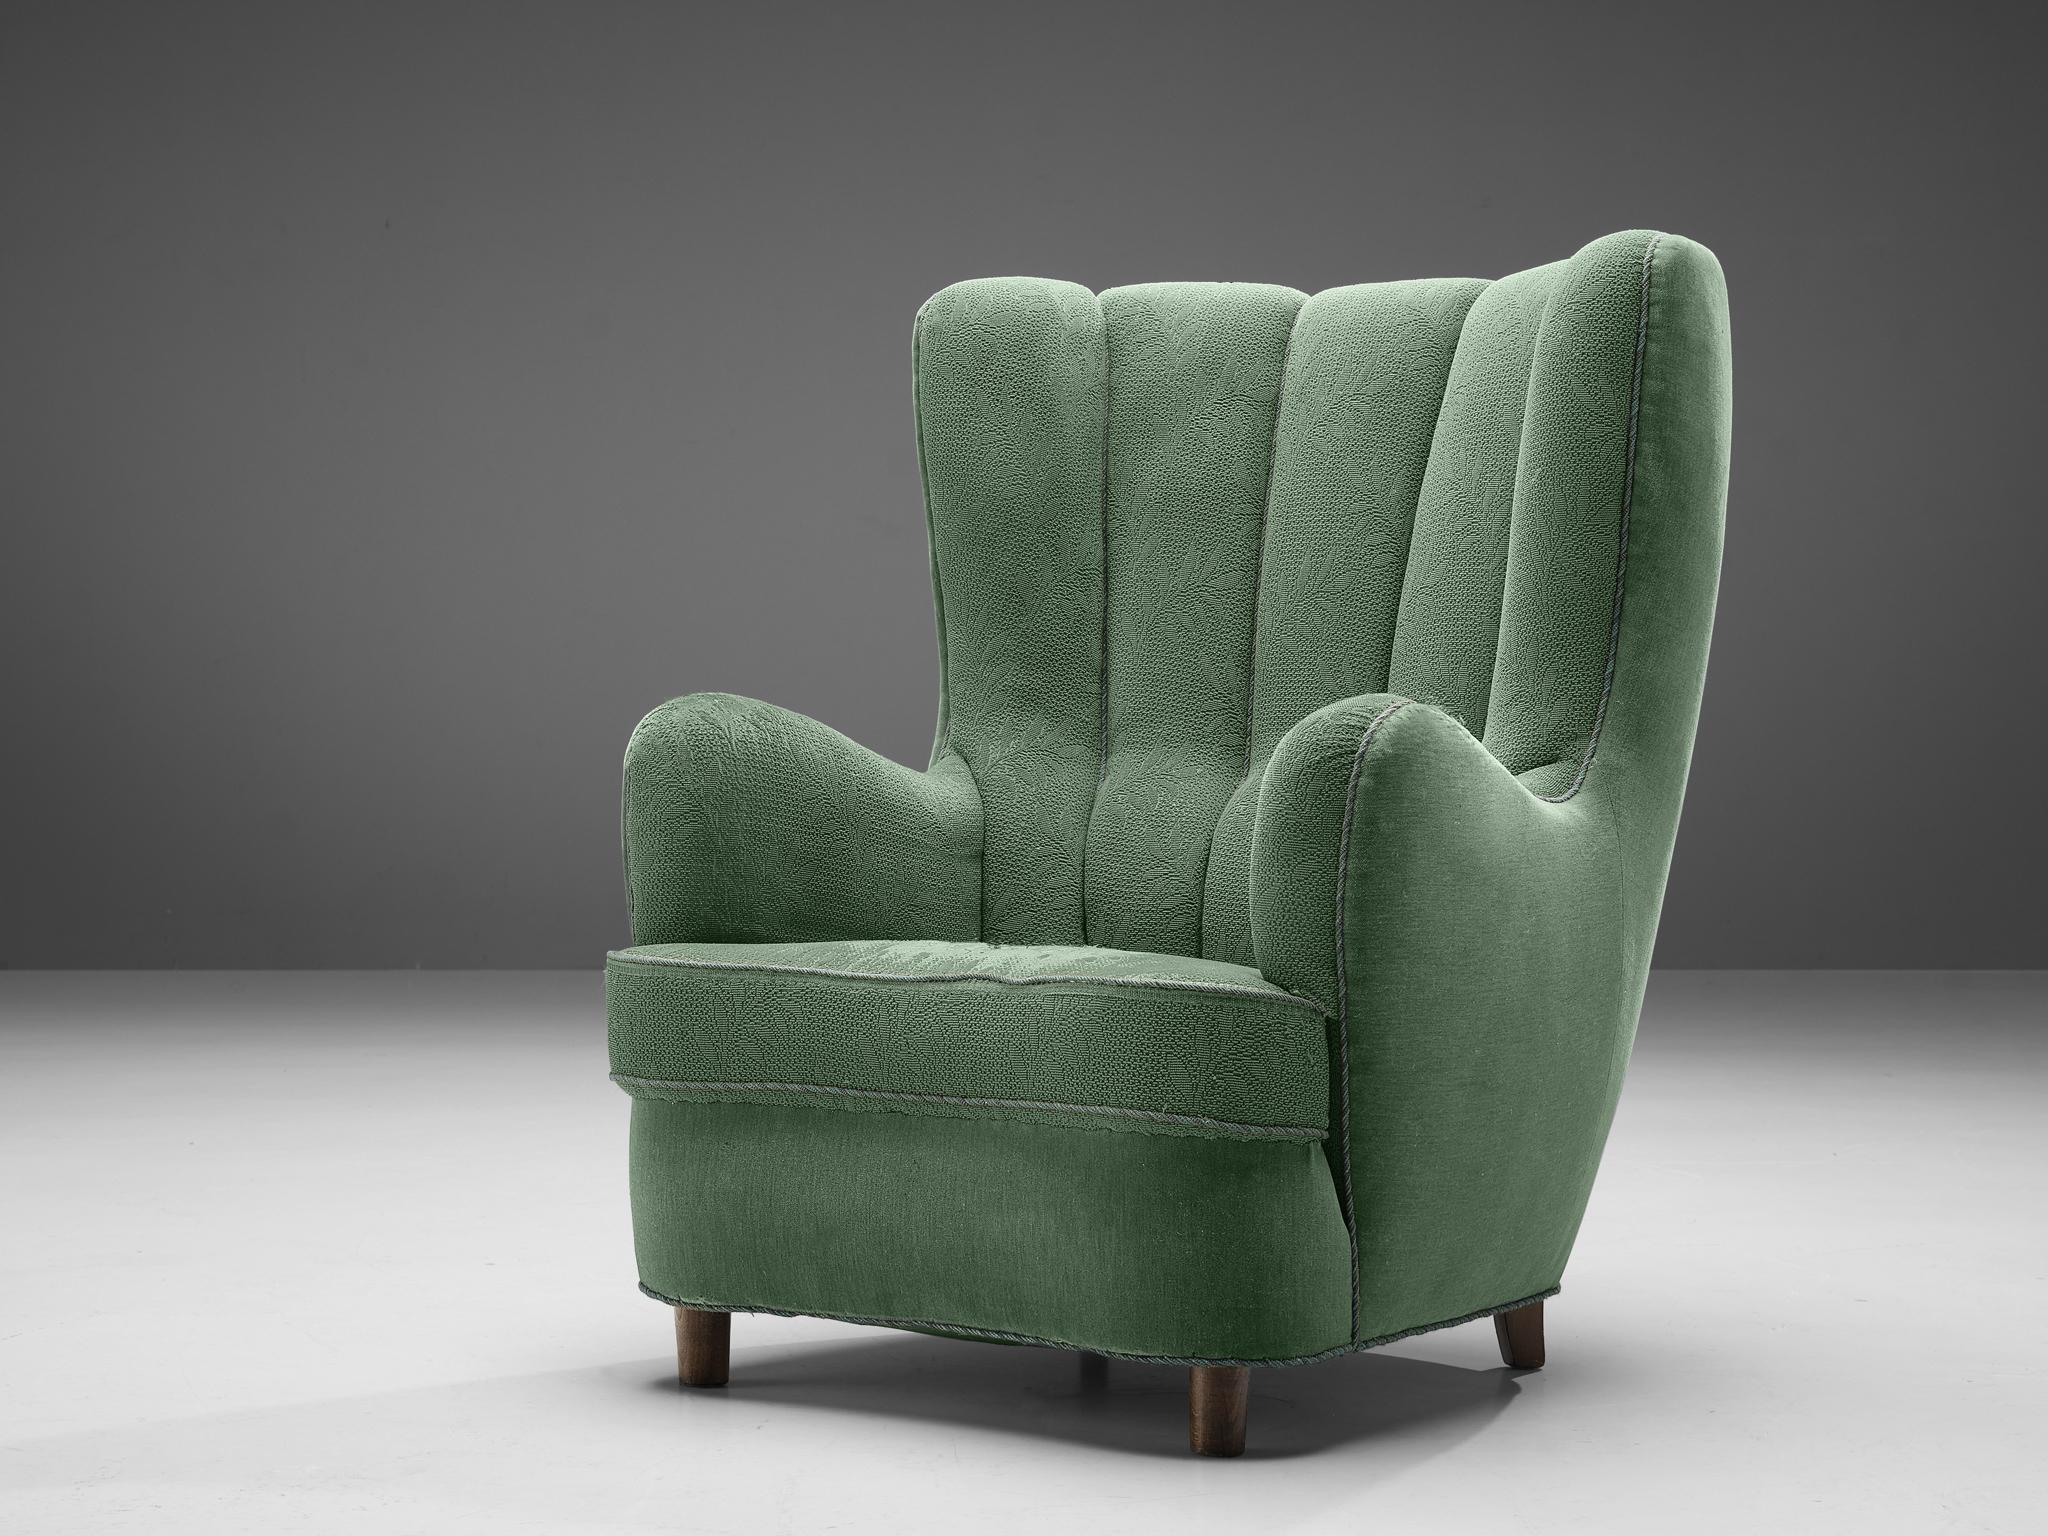 Fauteuil, tissu, hêtre, Danemark, années 1940. 

Ce fauteuil, avec ses bords doux, ses lignes touffetées et sa forme robuste, est typique du design danois de la période Art déco. Le dossier imposant et haut crée une expérience confortable, incitant